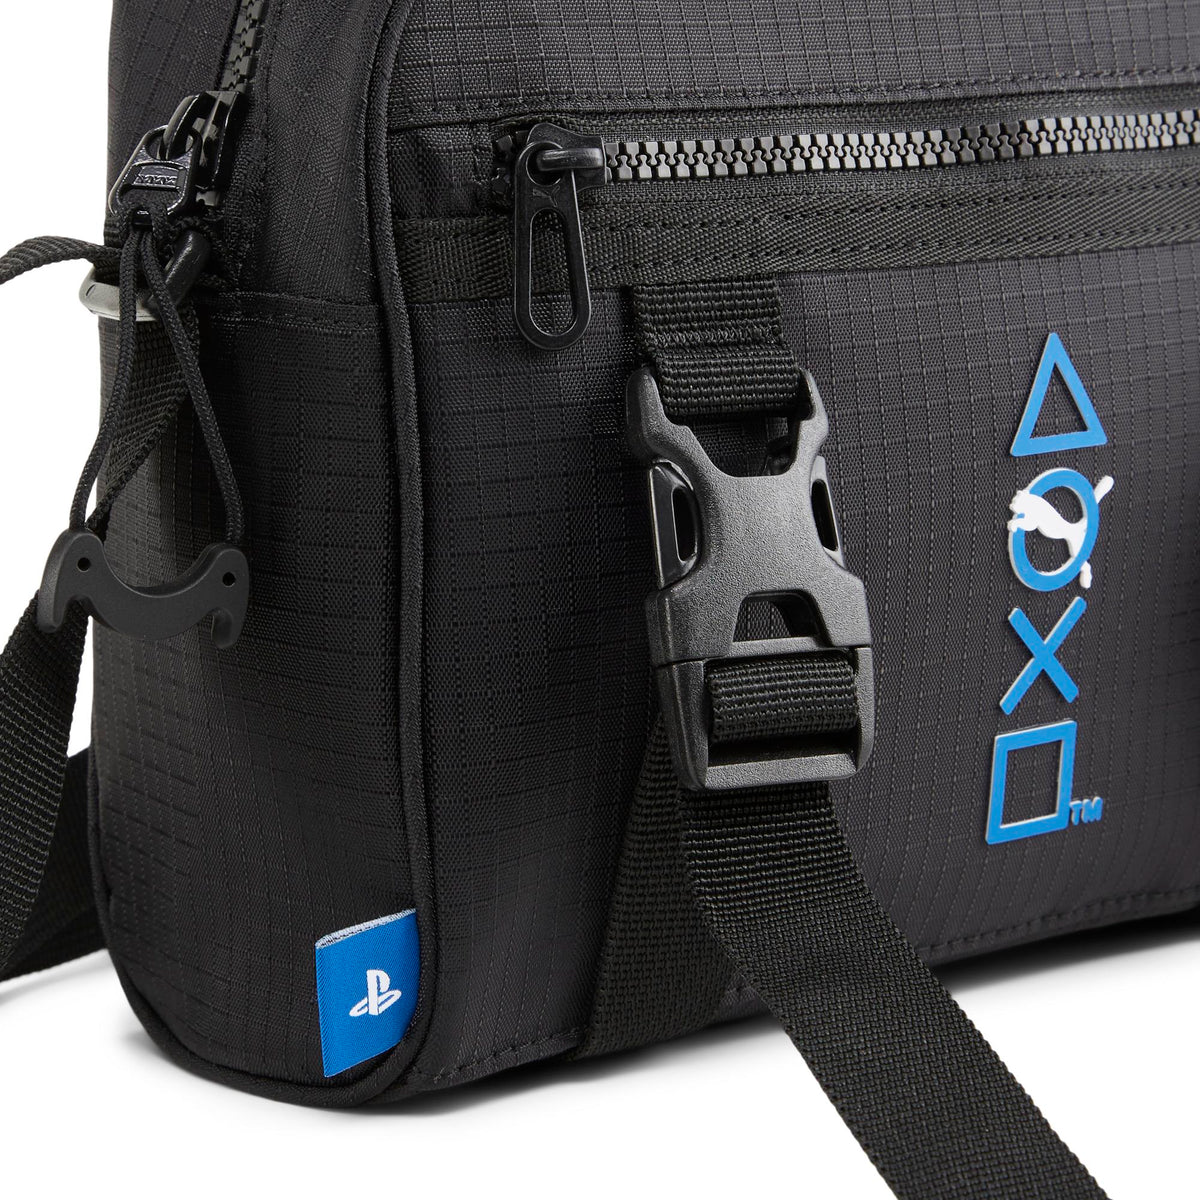 Puma x Playstation Crossbody Bag "Black"